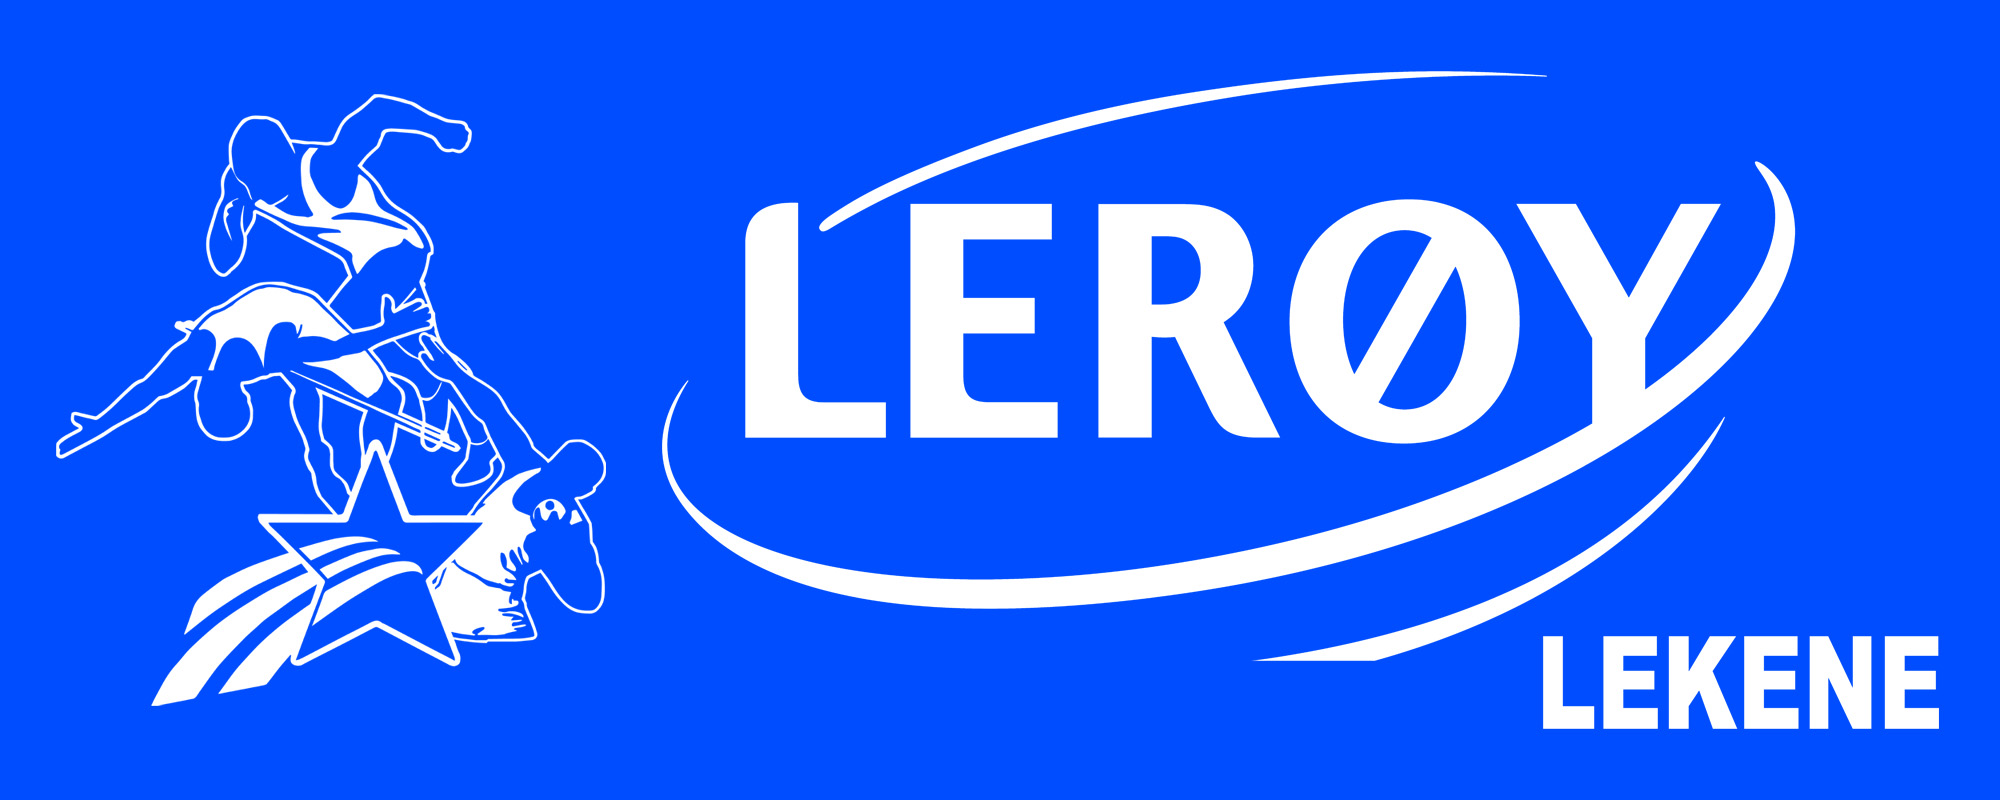 2.uttak kretslaget til Lerøy-lekene 2021